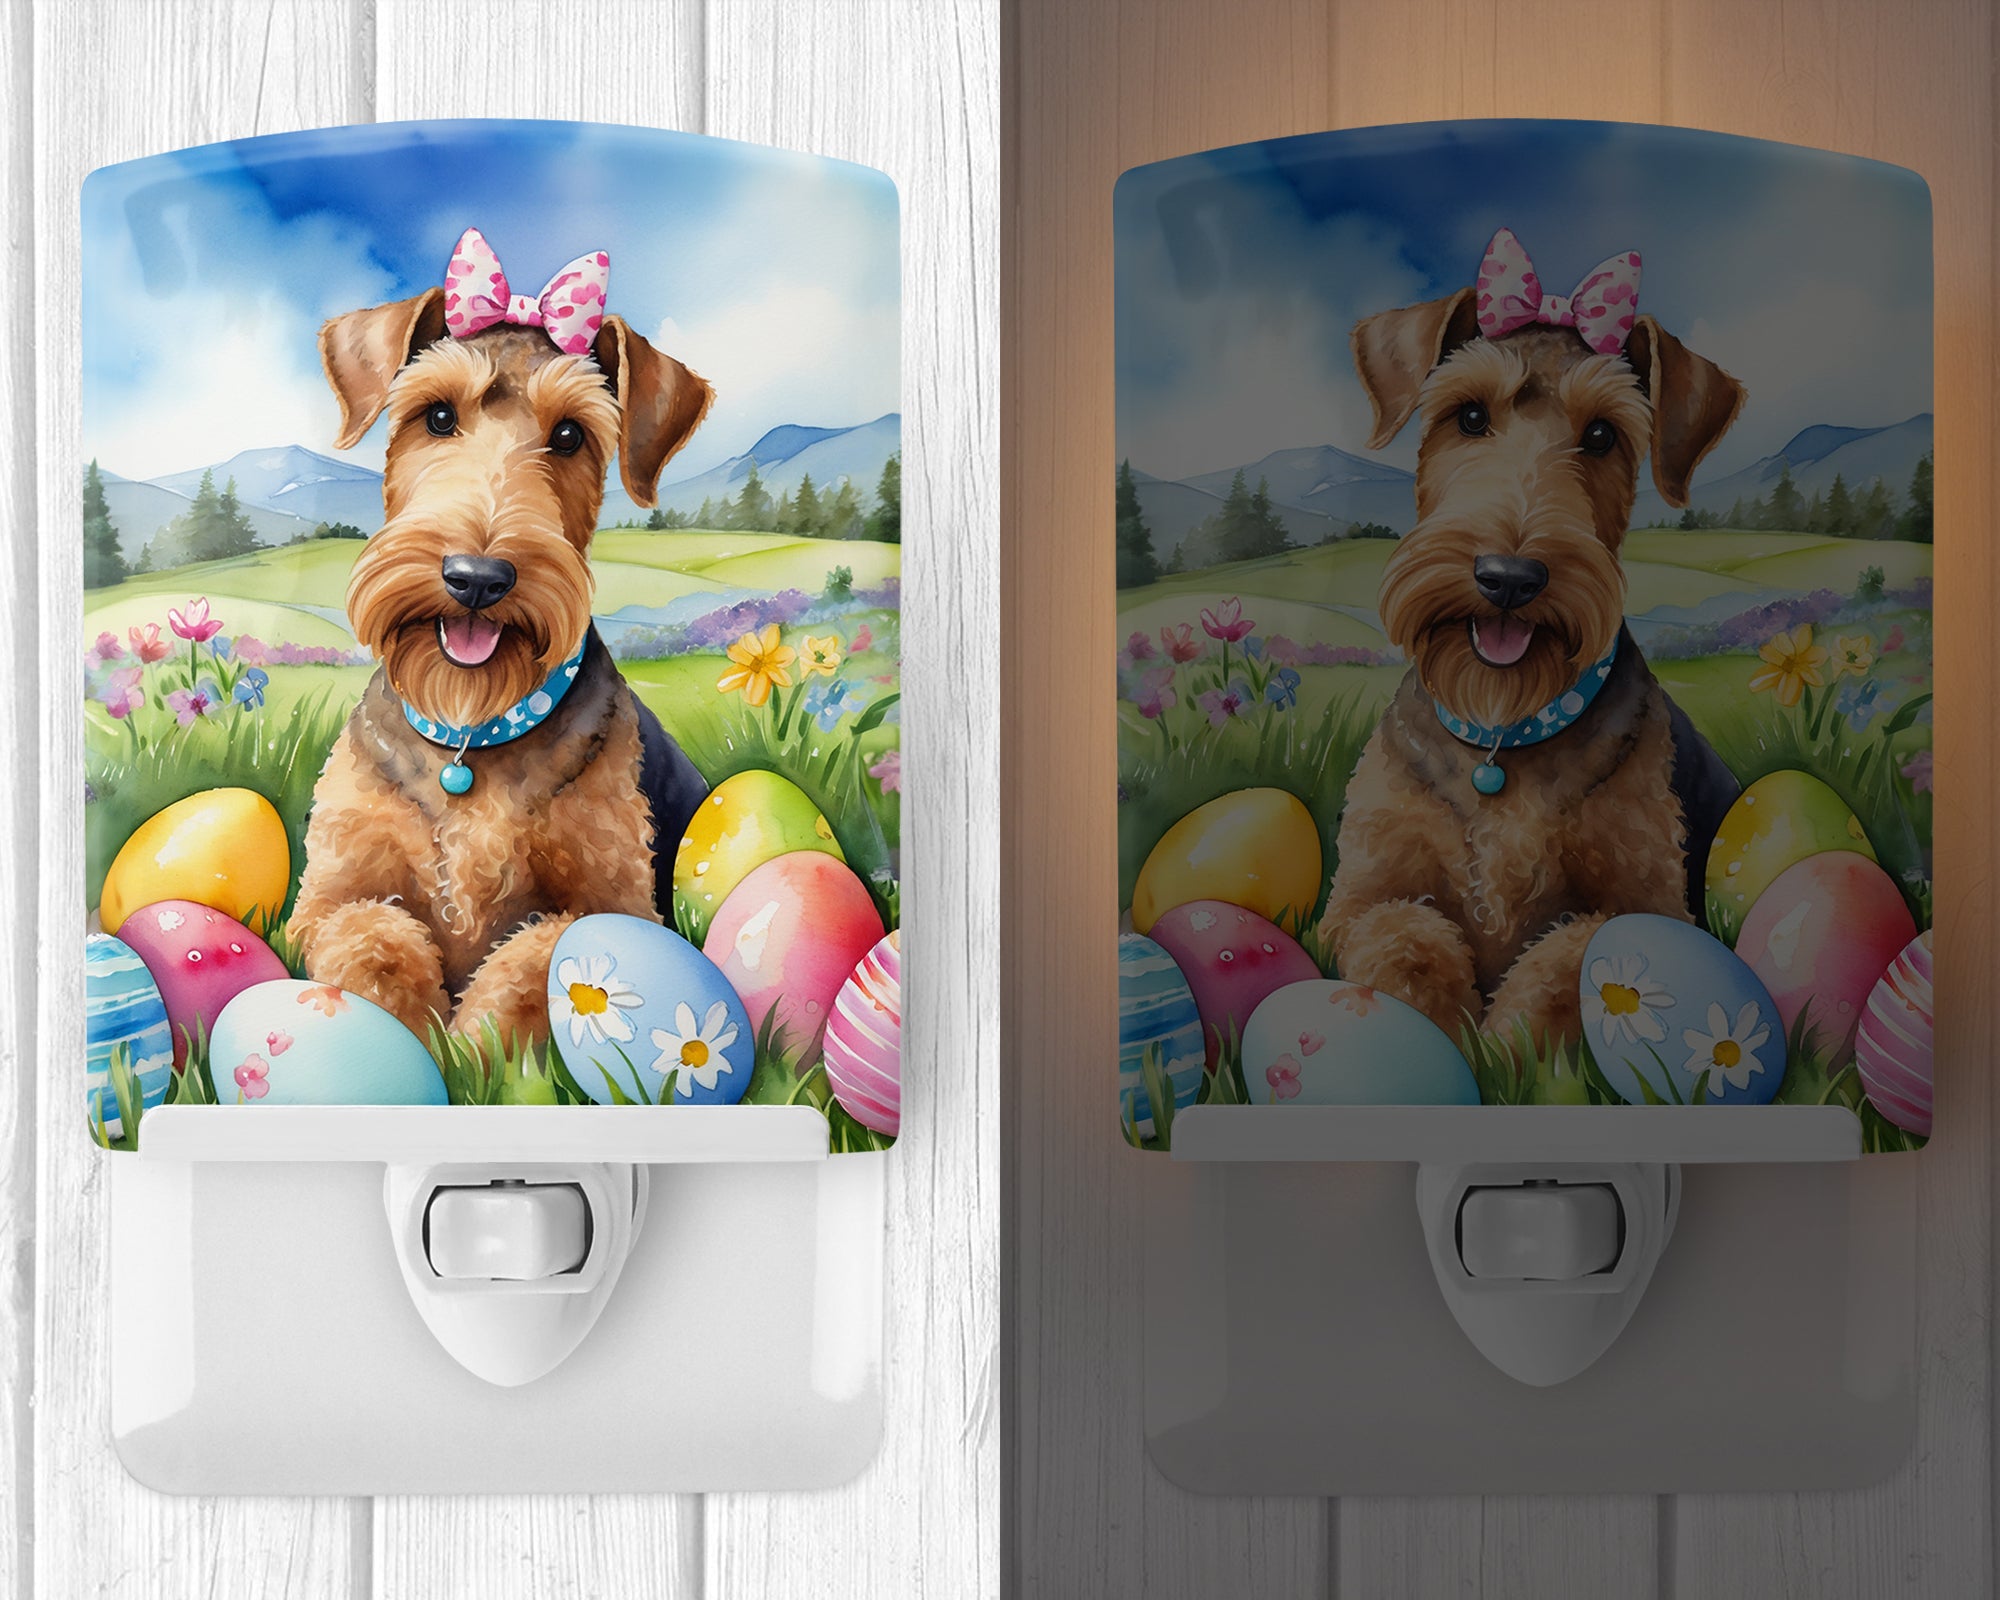 Buy this Airedale Terrier Easter Egg Hunt Ceramic Night Light